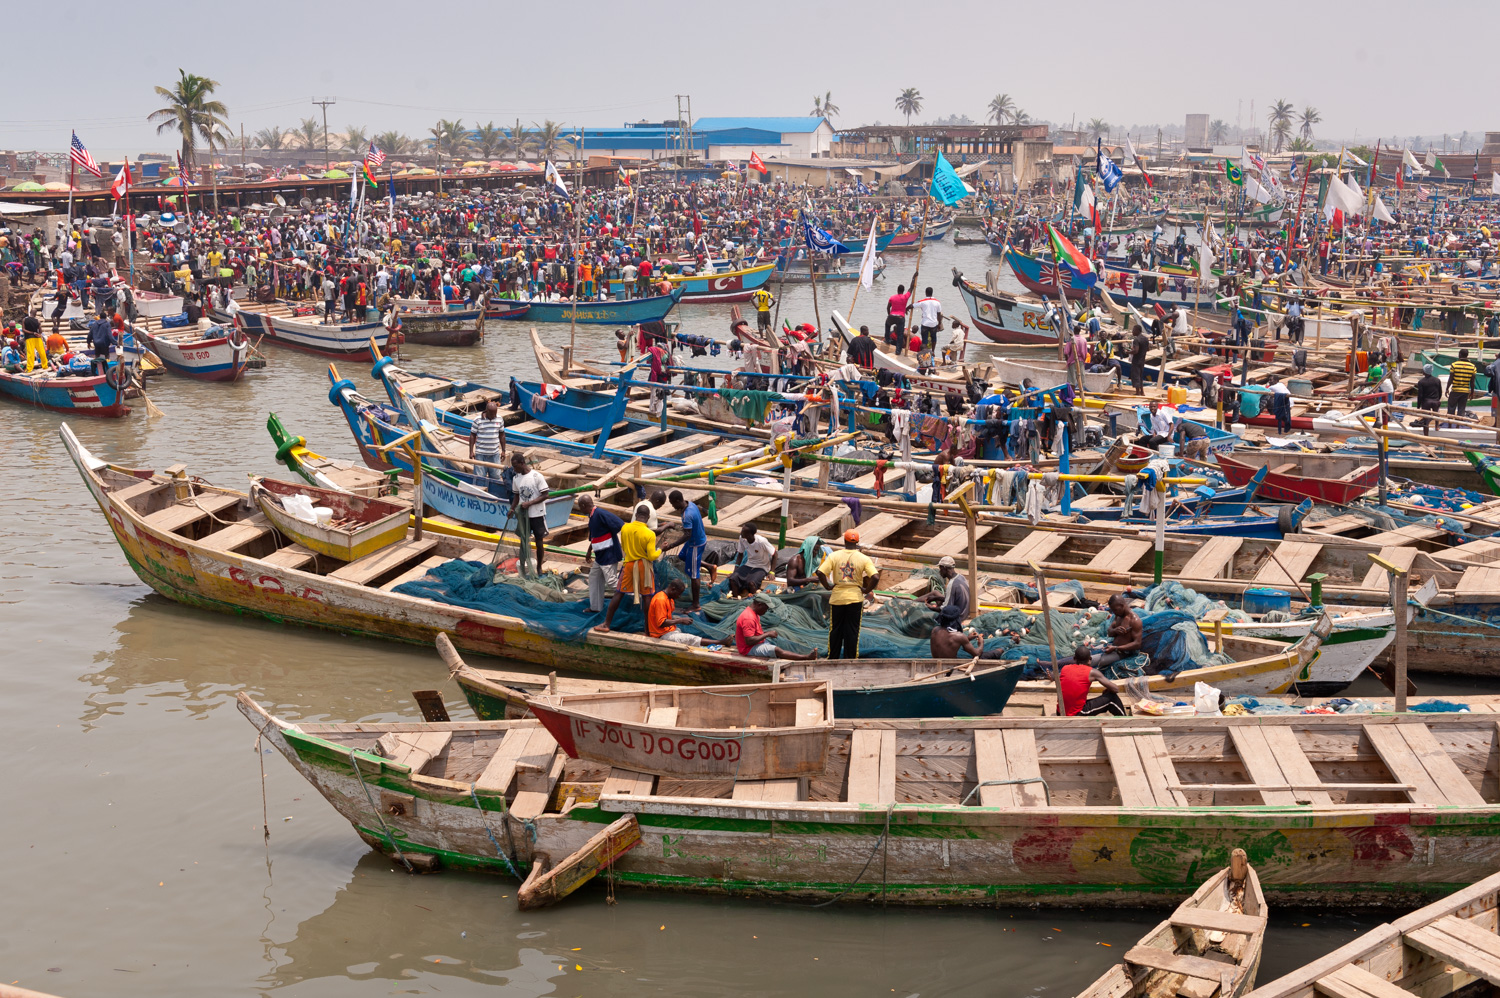 Pirogue fishing fleet - Elmina, Ghana